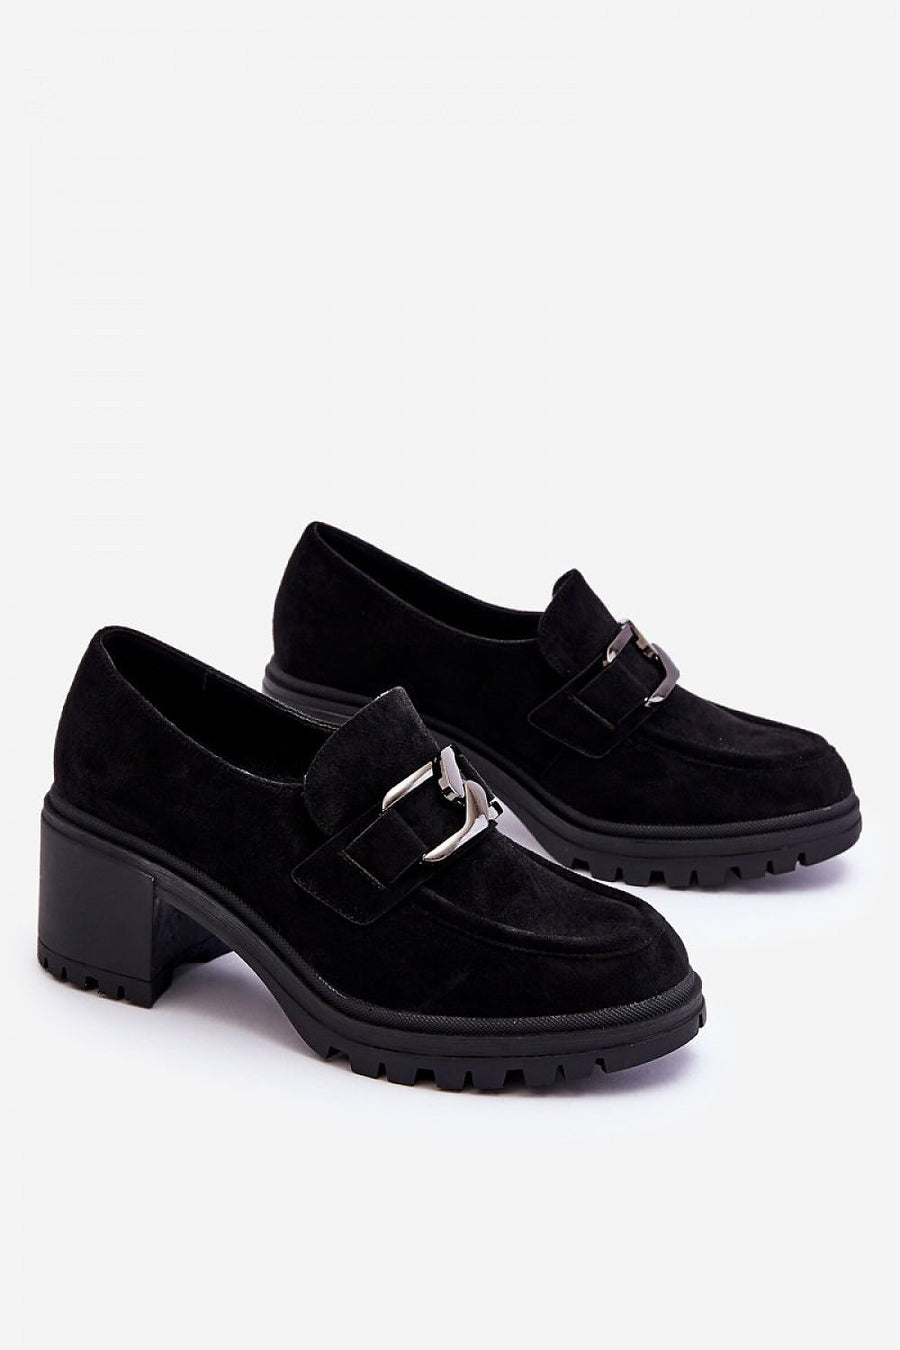 Schuhe mit Absatz Model 192090 Step in style